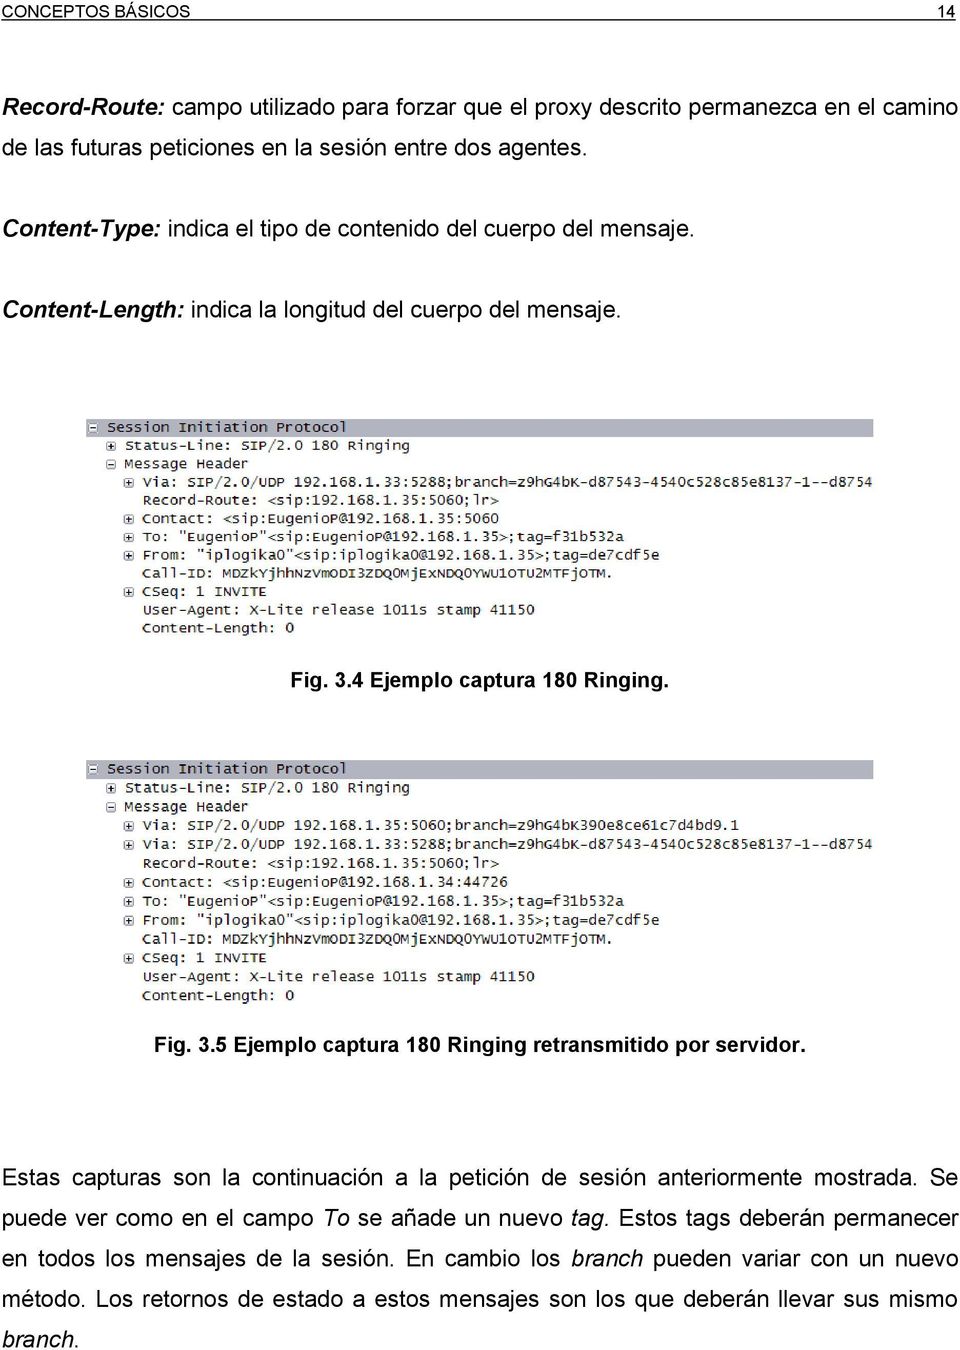 4 Ejemplo captura 180 Ringing. Fig. 3.5 Ejemplo captura 180 Ringing retransmitido por servidor. Estas capturas son la continuación a la petición de sesión anteriormente mostrada.